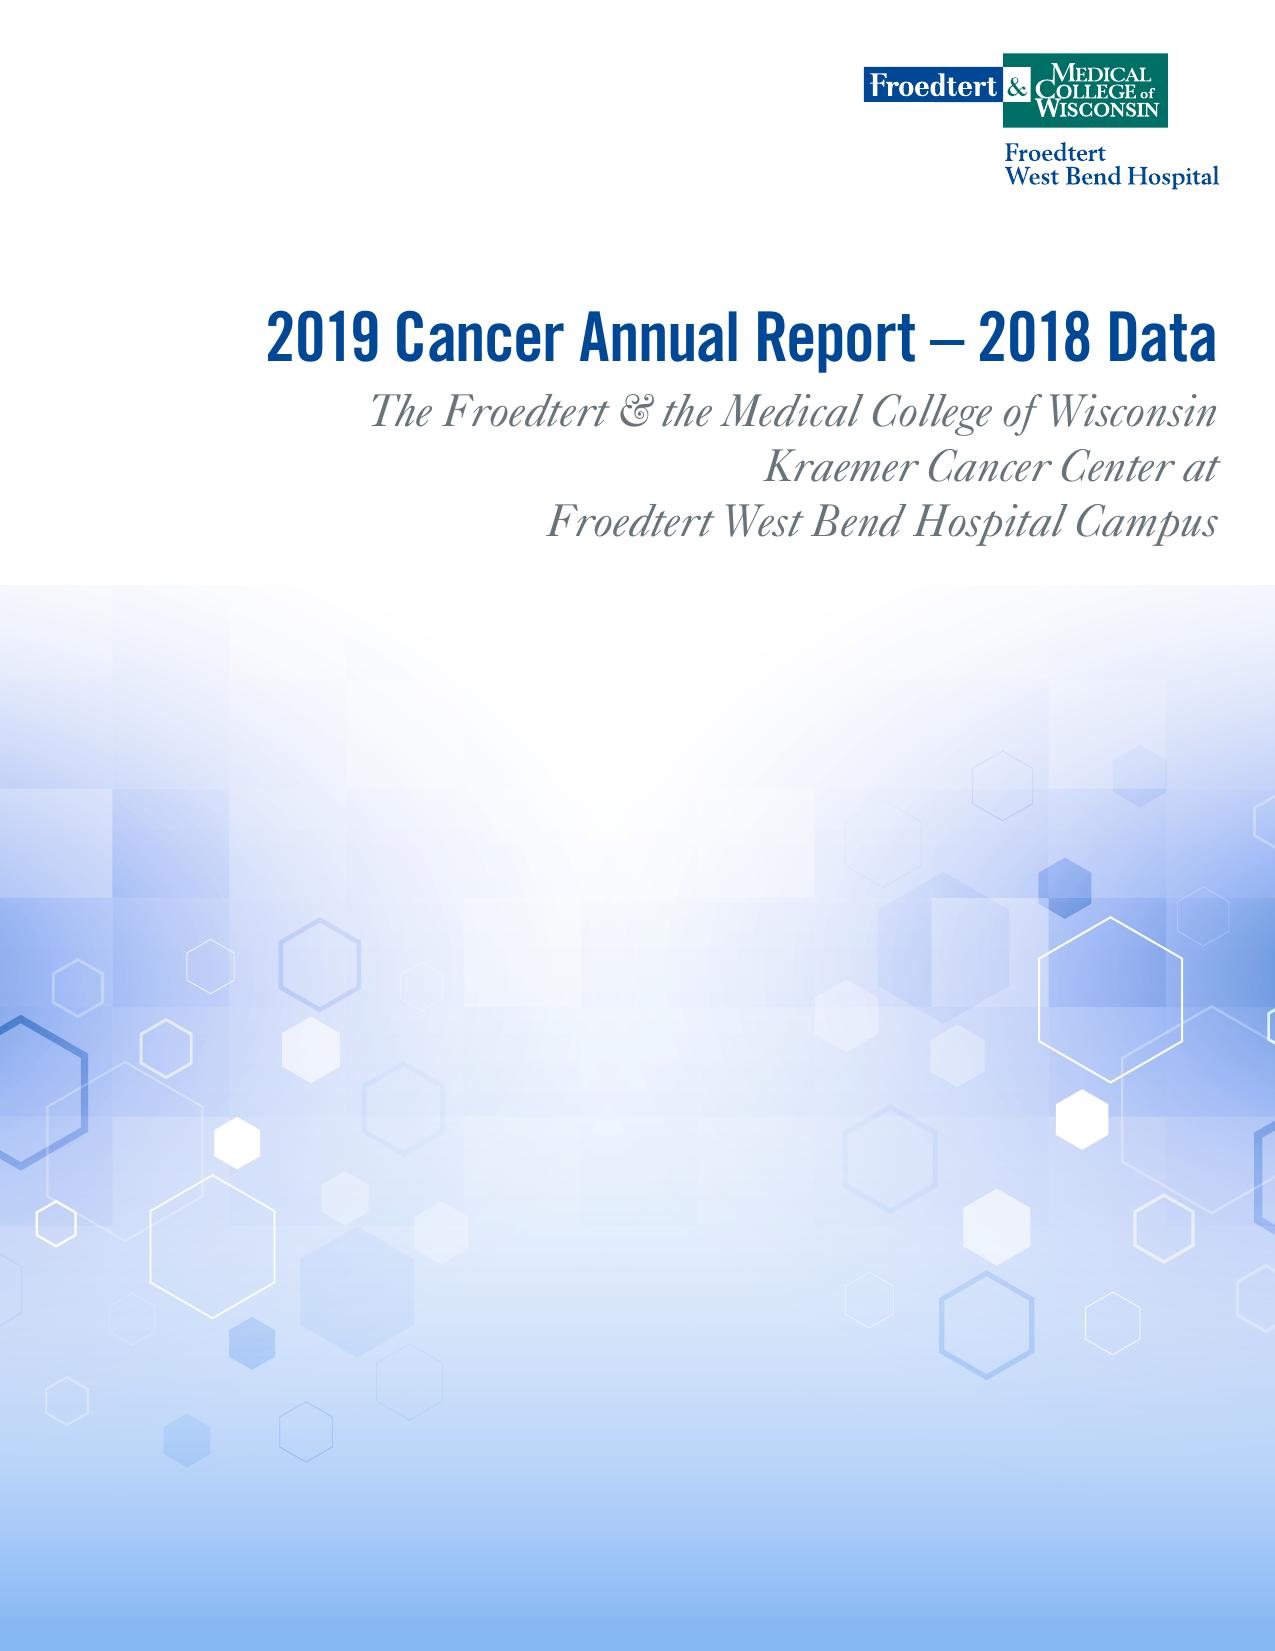 TRIHEALTH Annual Report